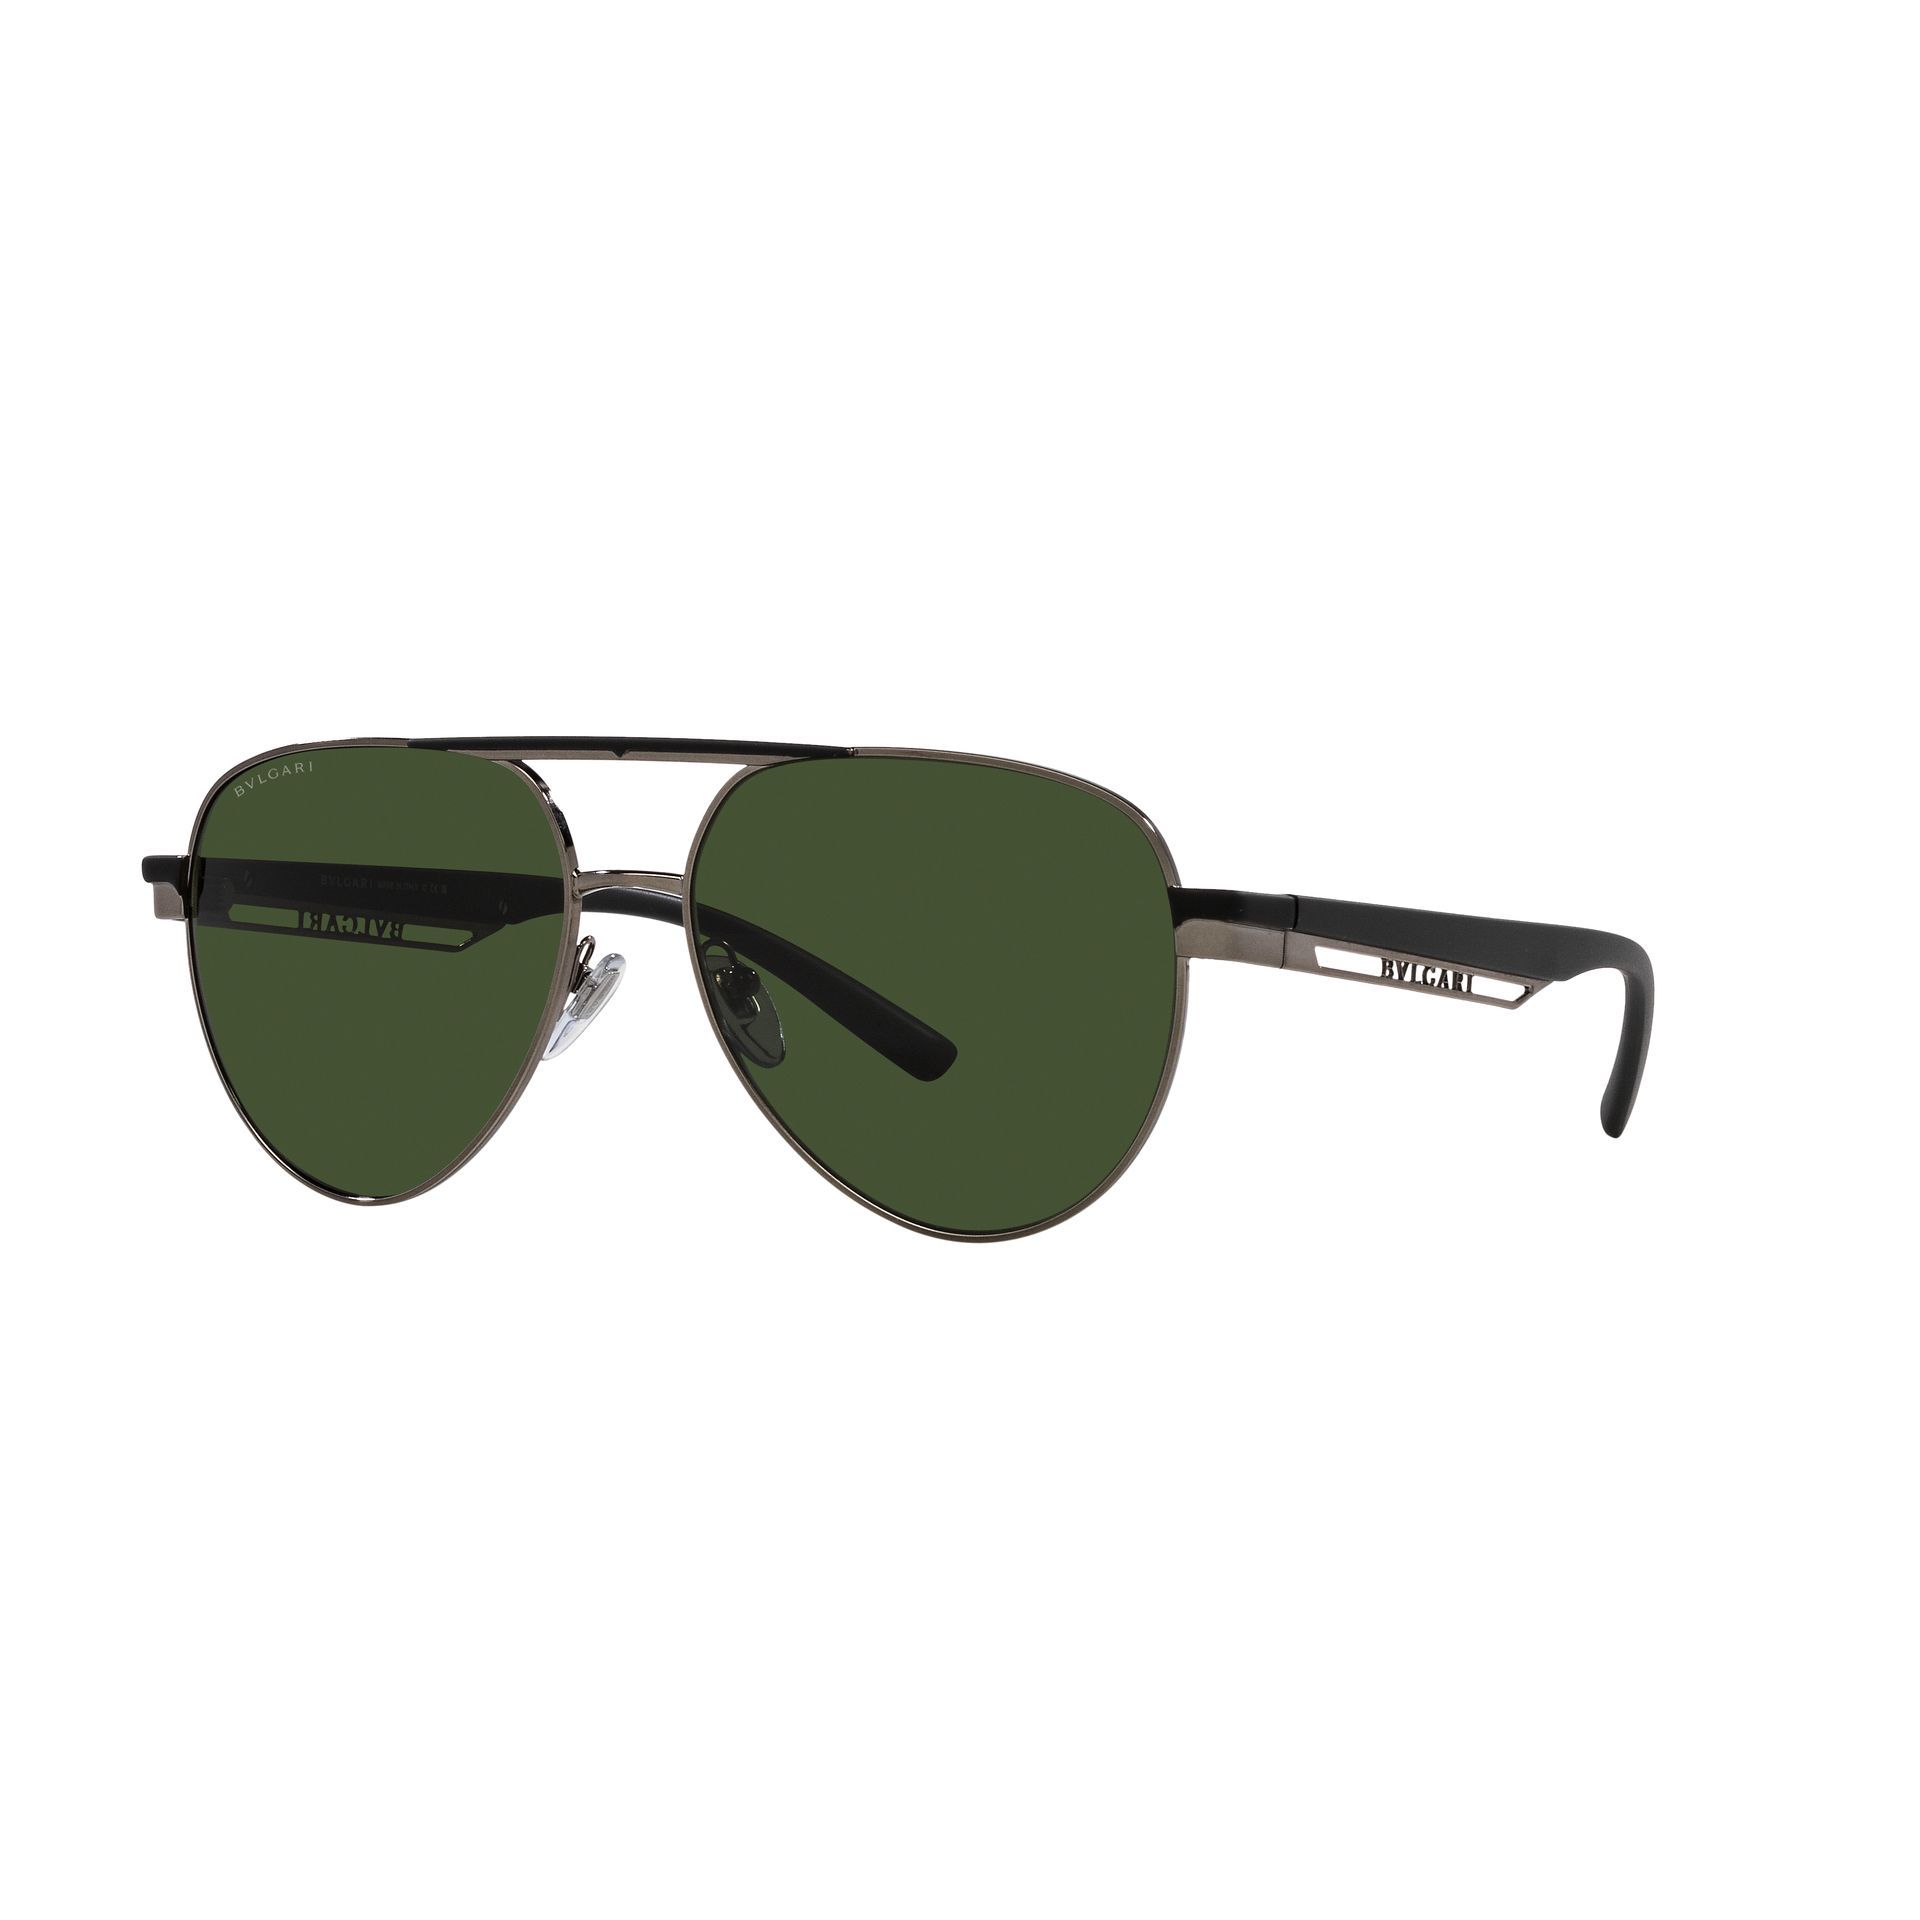 0BV6189 Pilot Sunglasses 103 G6 - size 58